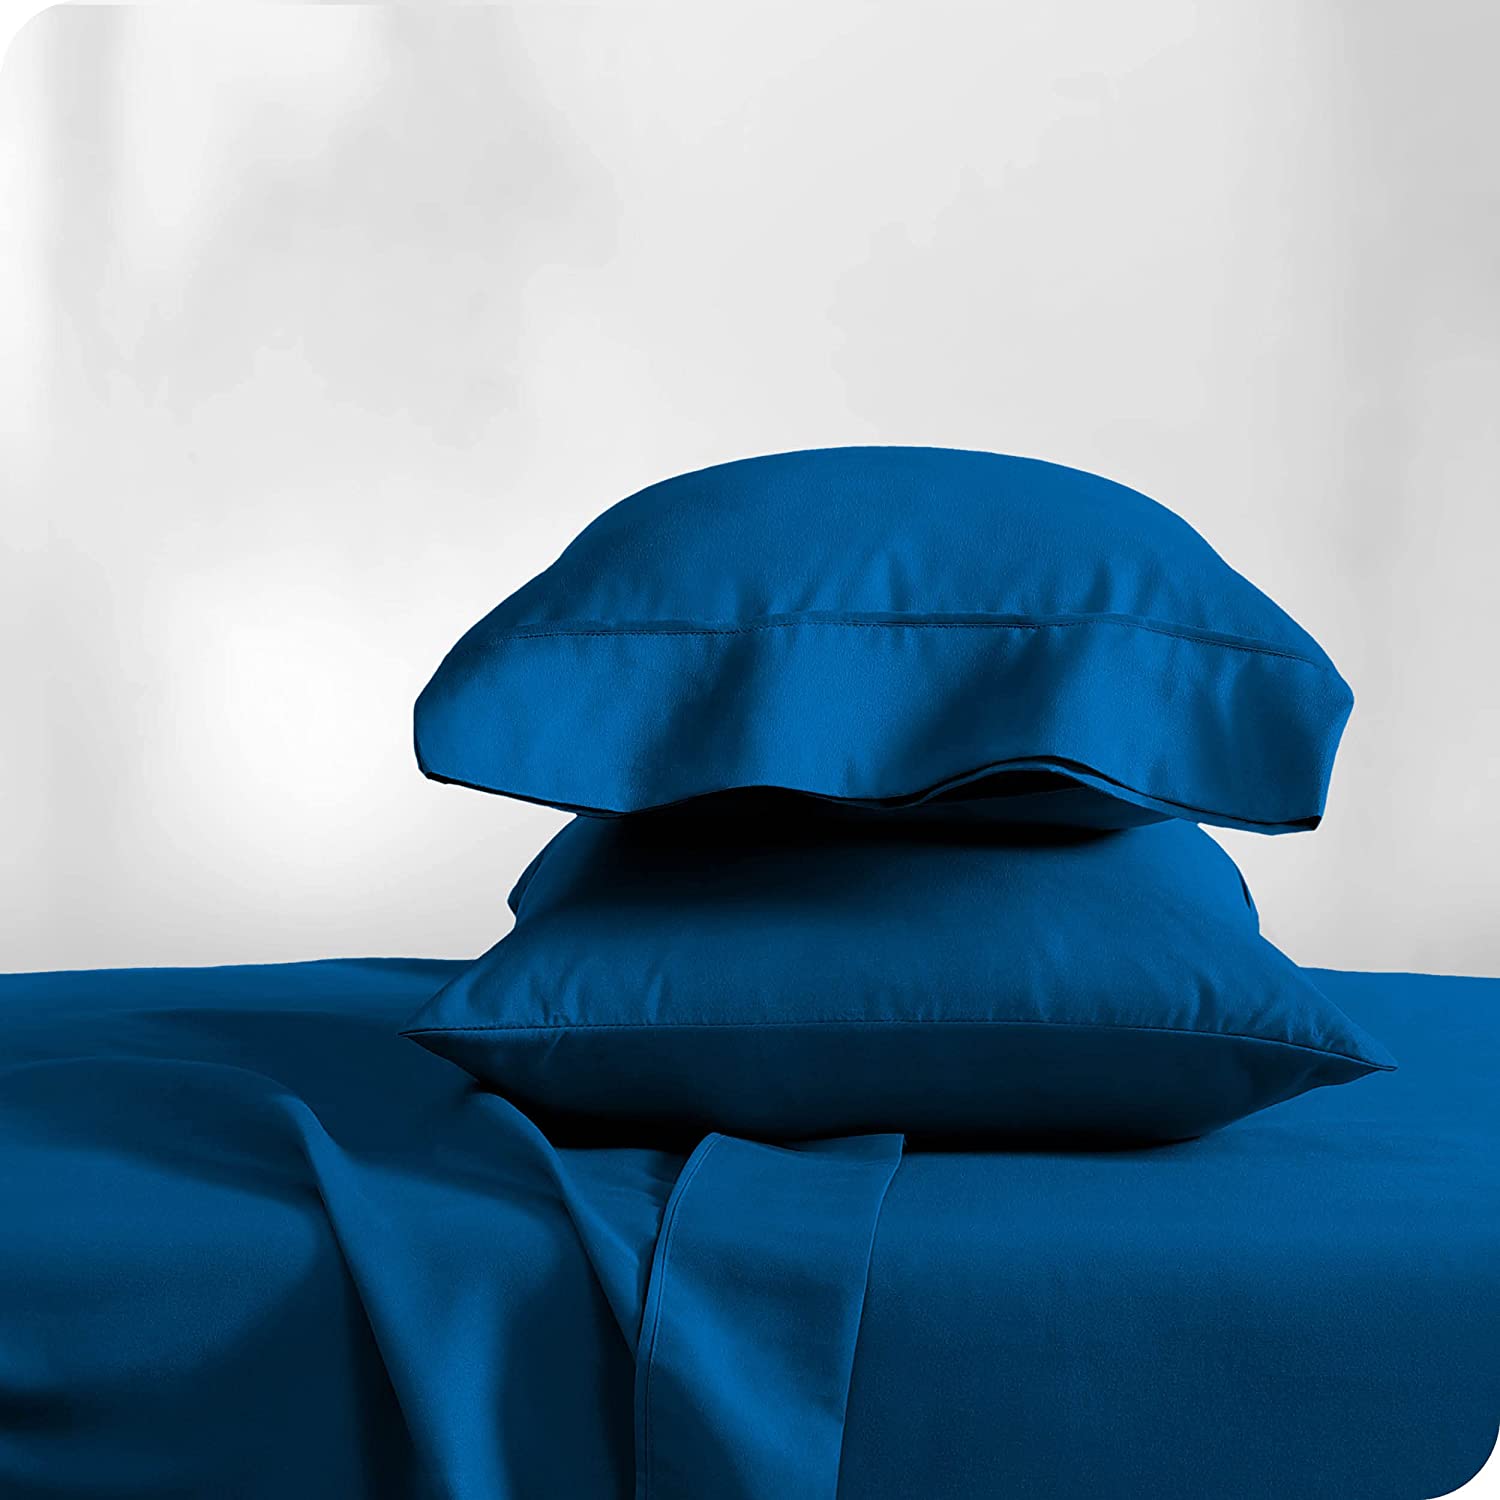 Royal Blue Bed Sheets